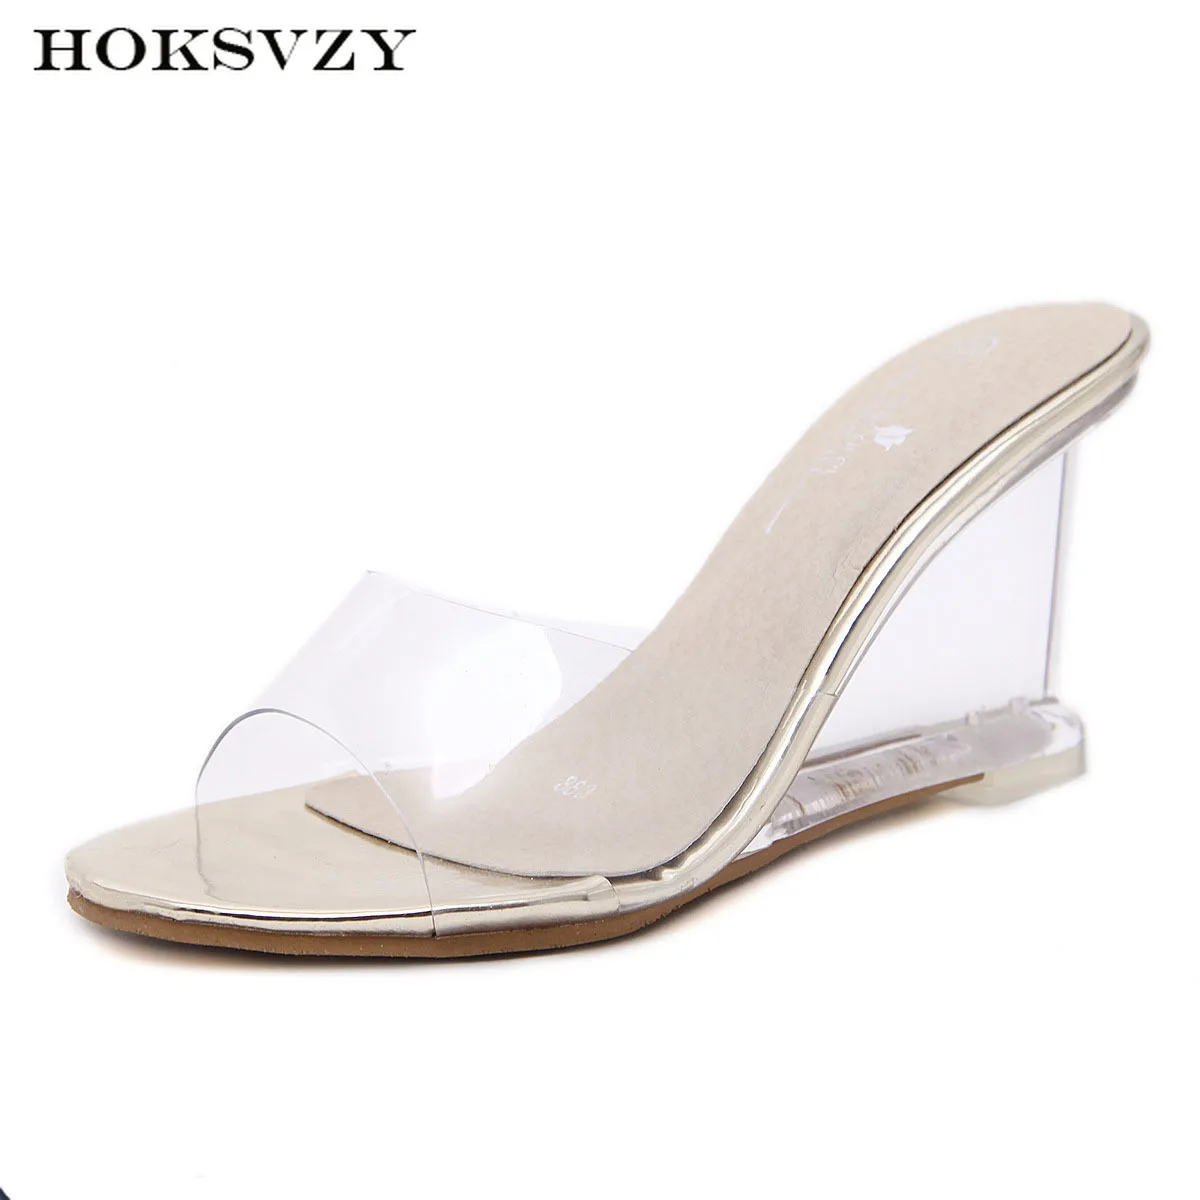 HOKSZVY/женские шлепанцы Летняя женская обувь на высоком каблуке простые босоножки на танкетке с пряжкой прозрачная обувь LFD-833-2